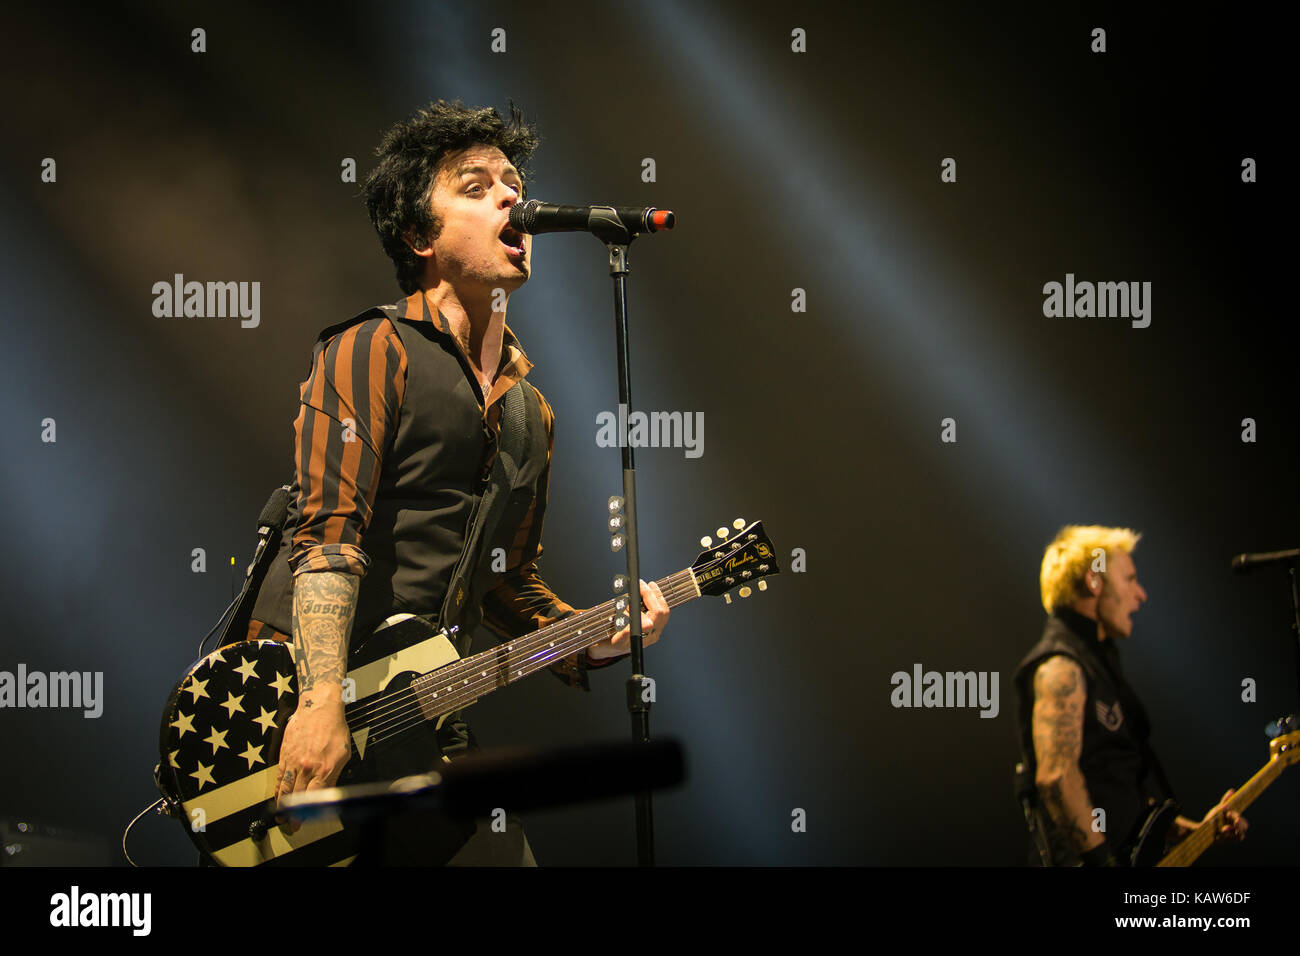 La banda de punk rock americana Green Day realiza un concierto en vivo en  Oslo Spektrum. Aquí el cantante y músico Billie Joe Armstrong es visto en  vivo en el escenario. Noruega,